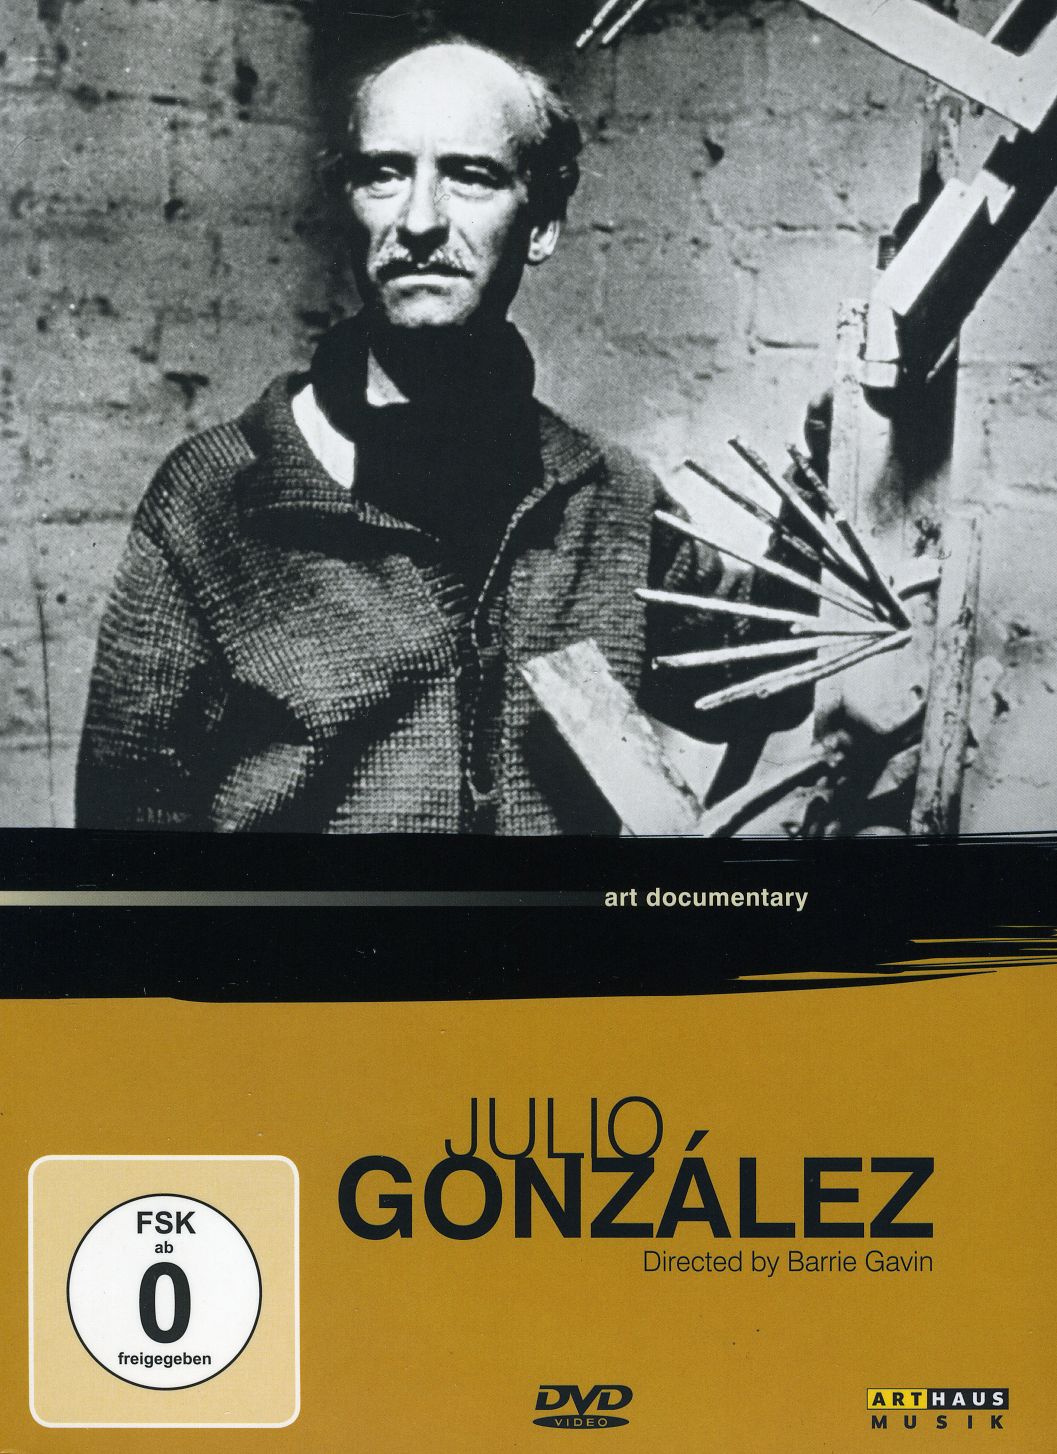 JULIO GONZALEZ